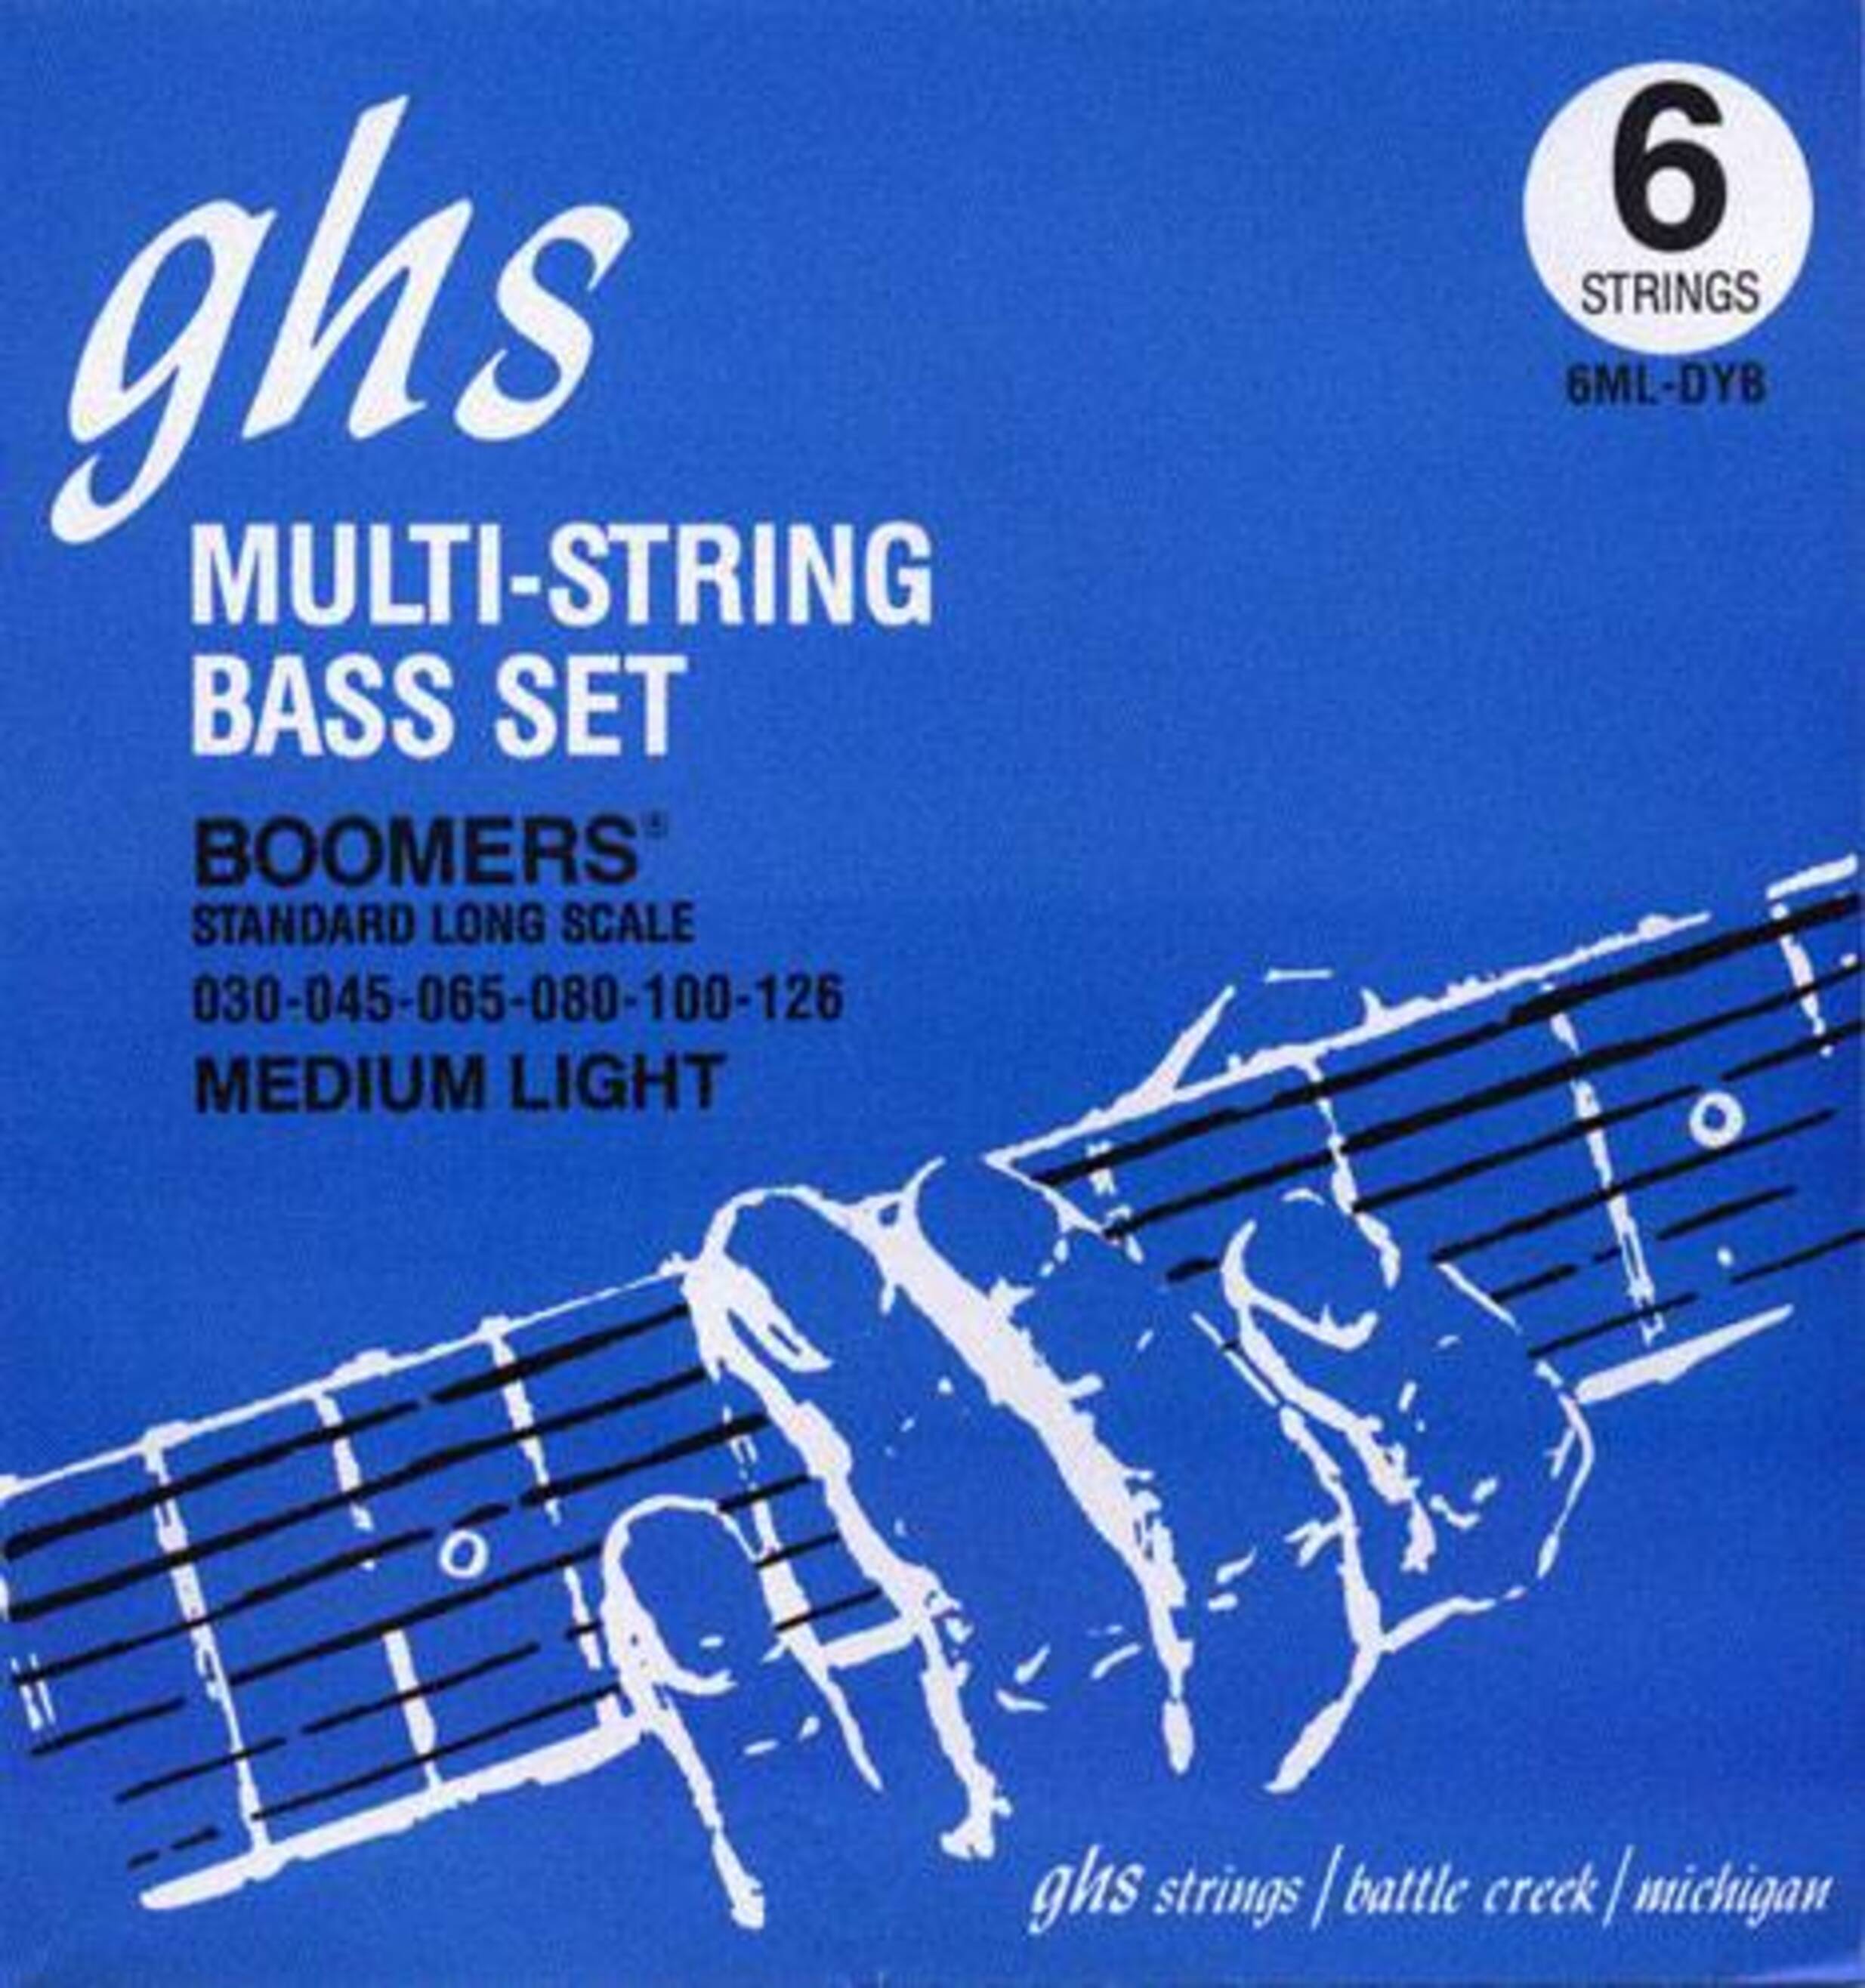 Струны GHS Strings 6ML-DYB струны ghs strings 6ml dyb